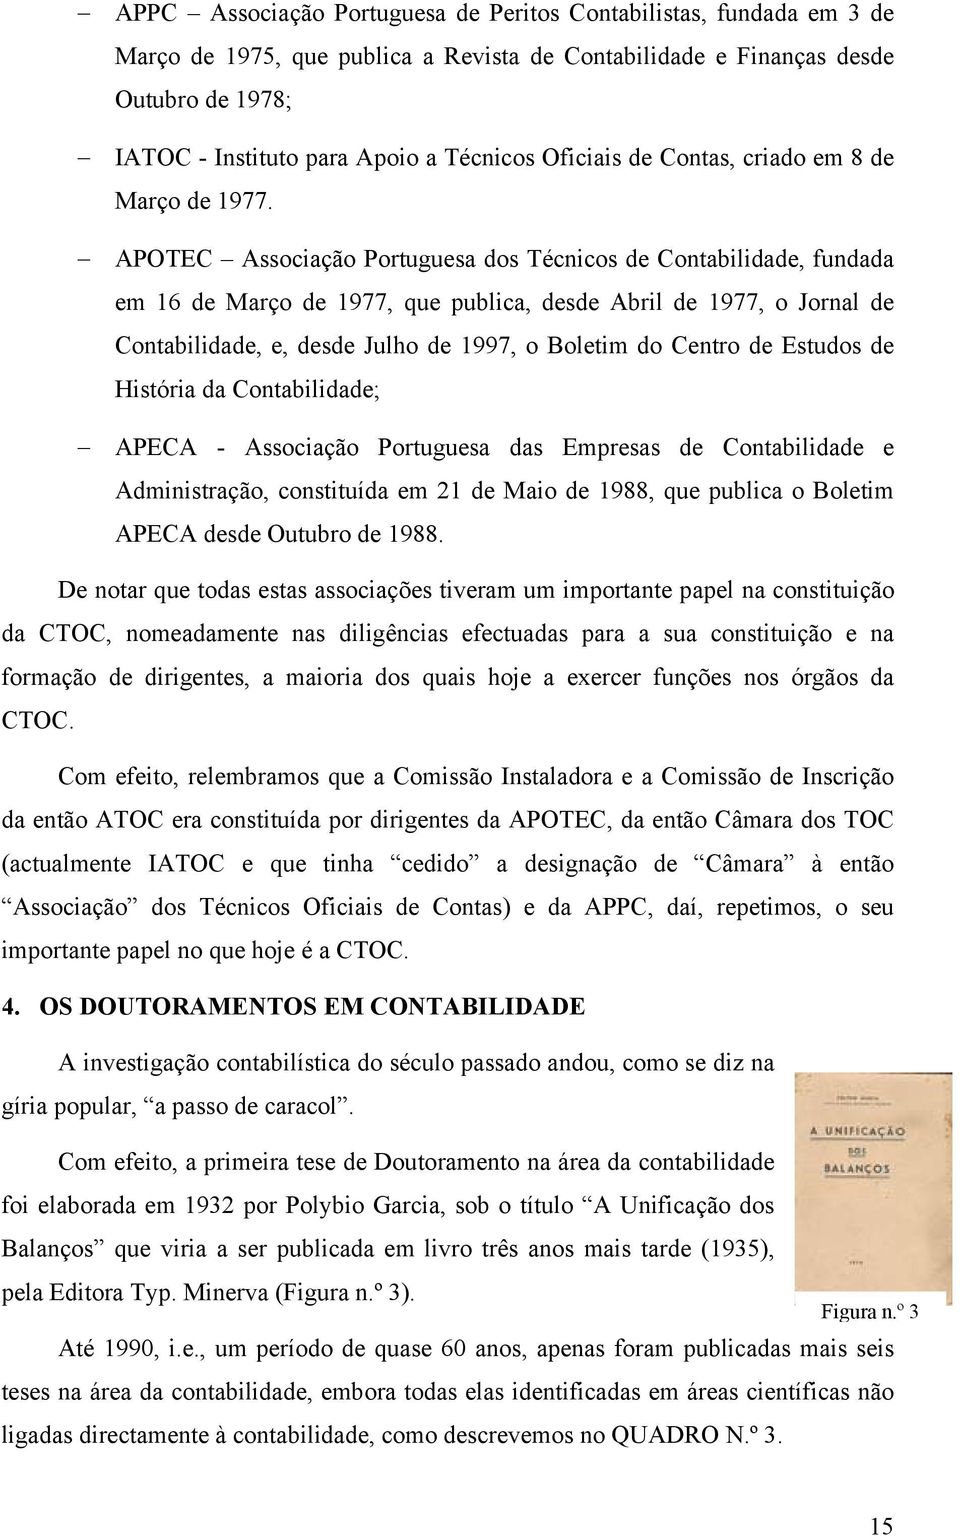 APOTEC Associação Portuguesa dos Técnicos de Contabilidade, fundada em 16 de Março de 1977, que publica, desde Abril de 1977, o Jornal de Contabilidade, e, desde Julho de 1997, o Boletim do Centro de